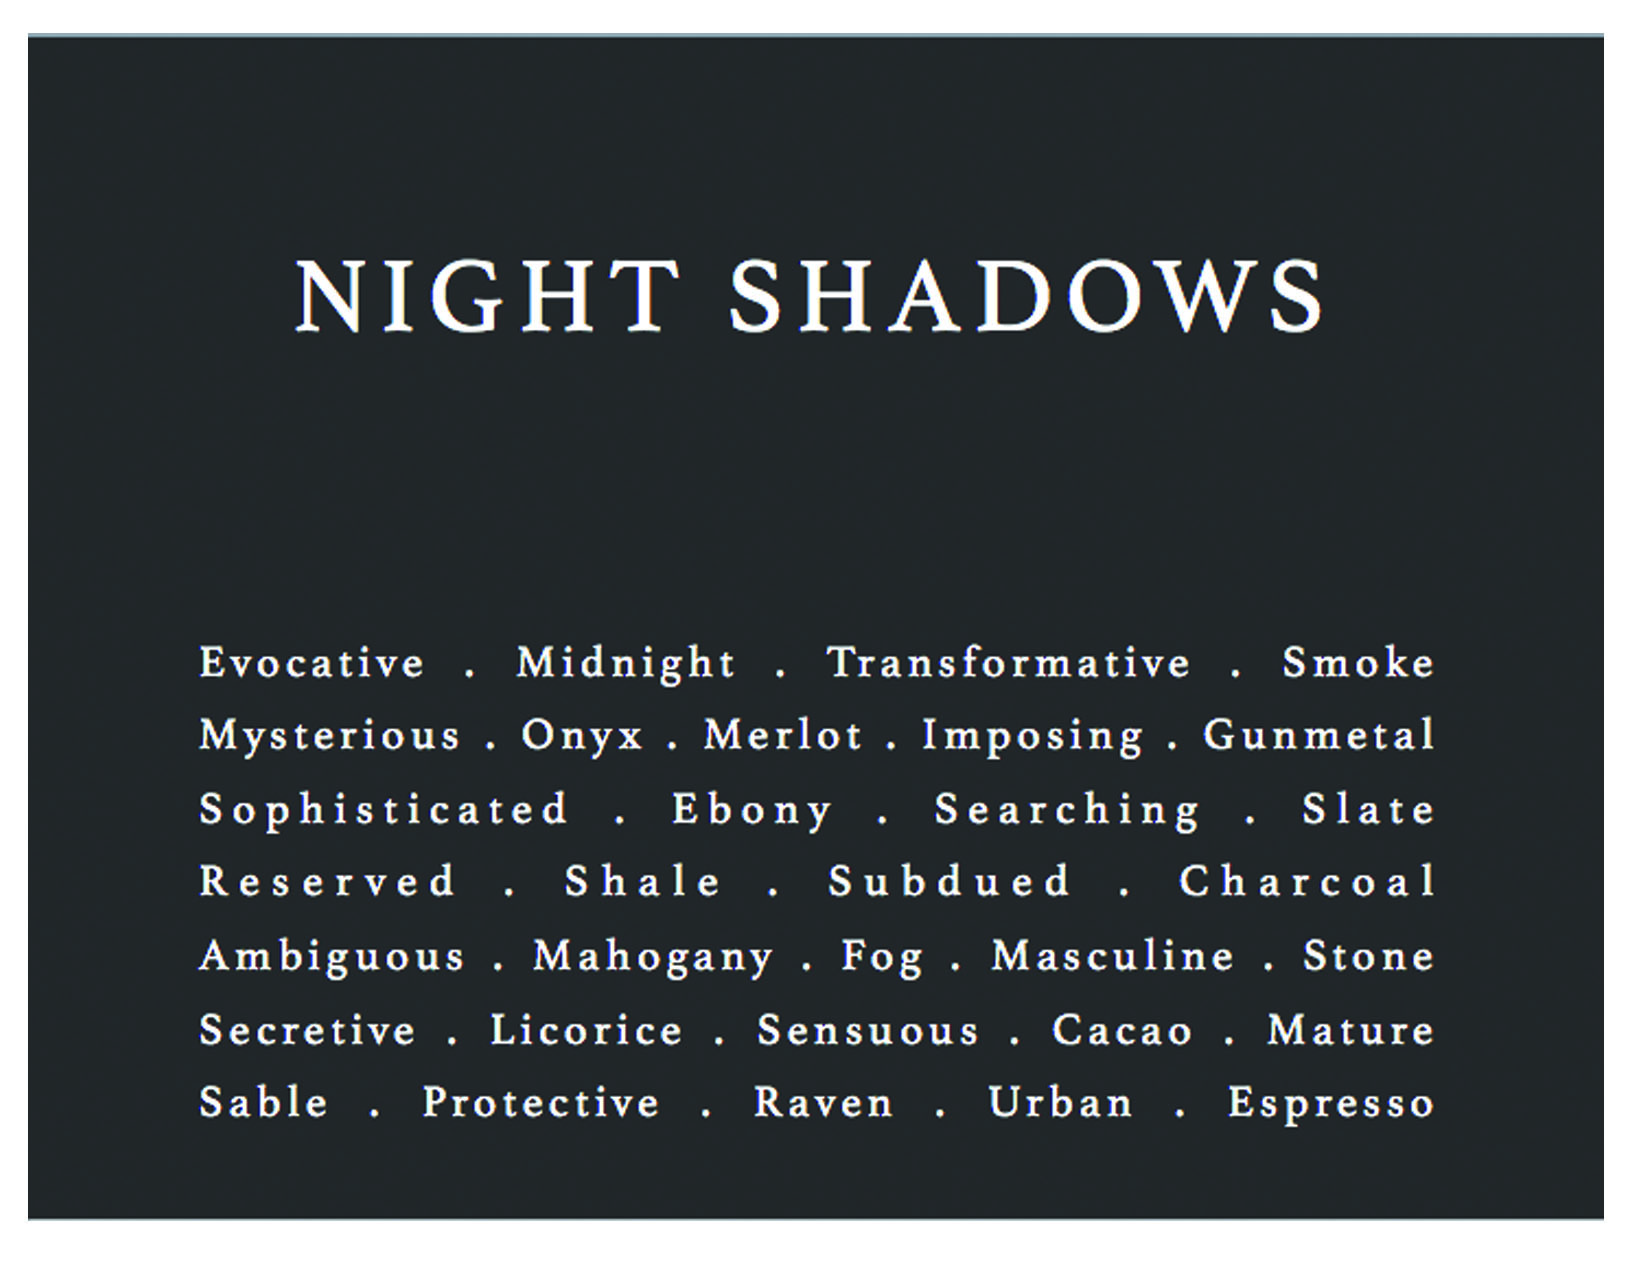 nightshadows